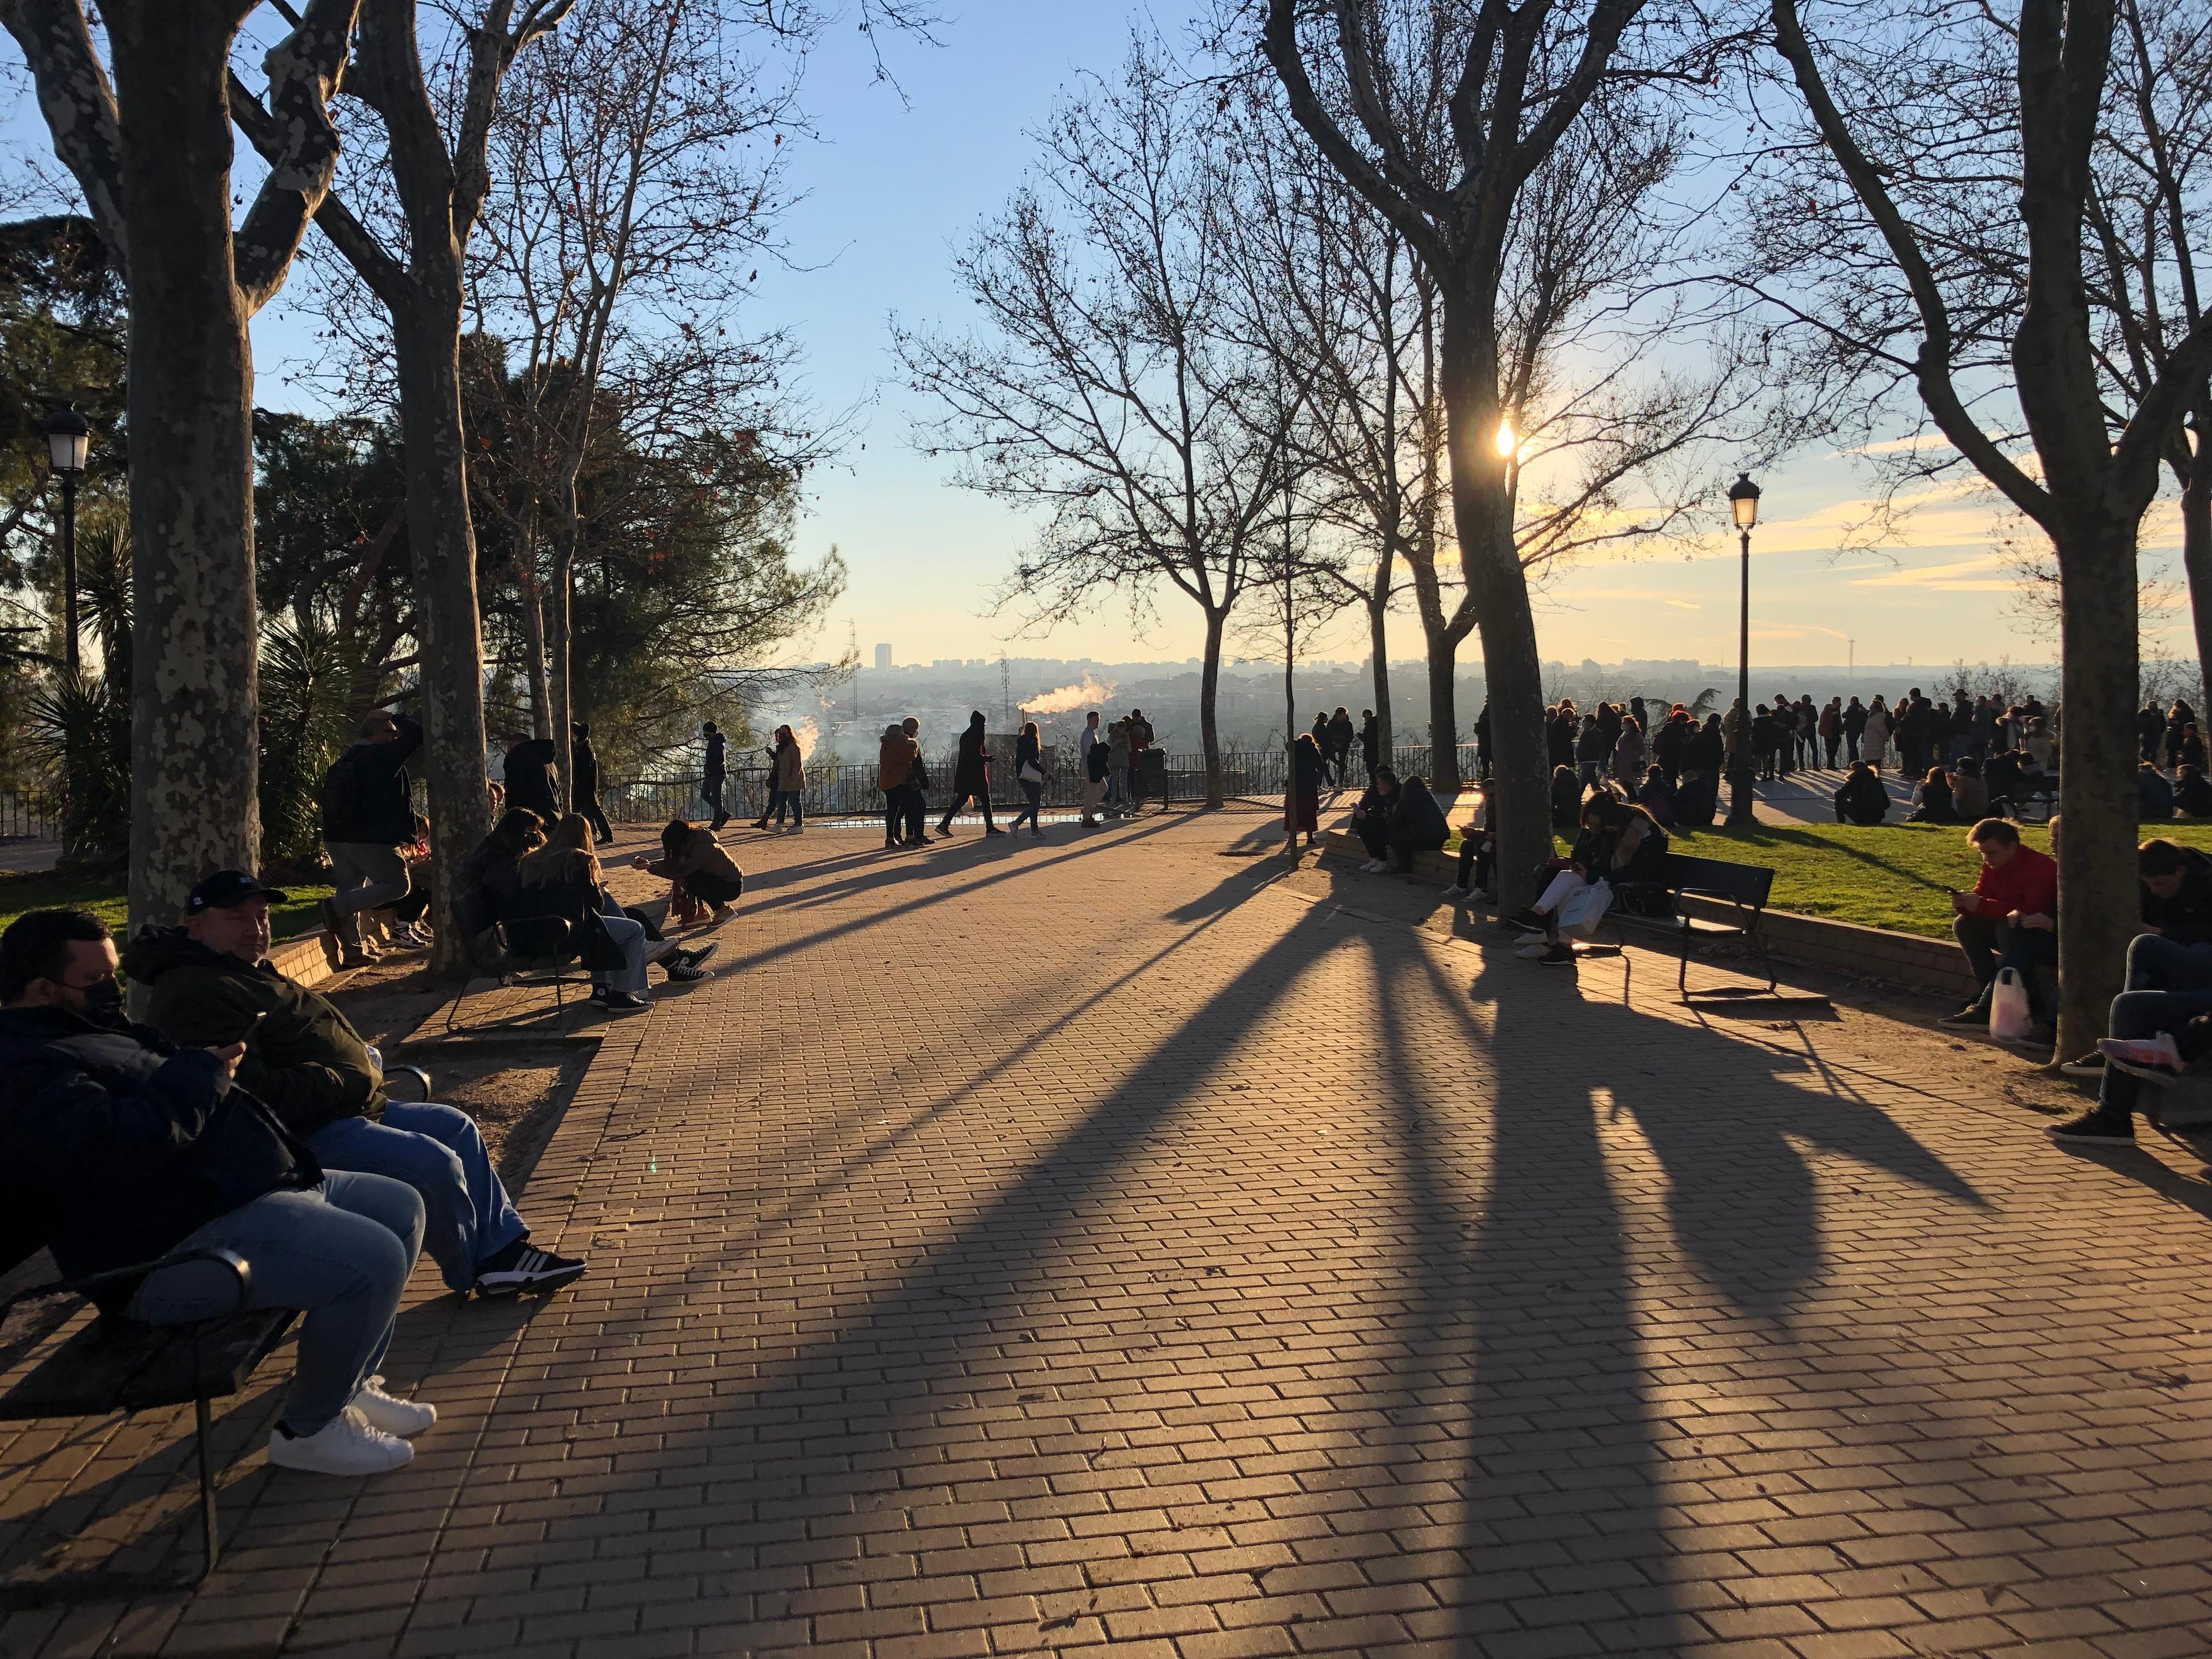 Ludzie w parku, alejka, drzewa i zachód słońca